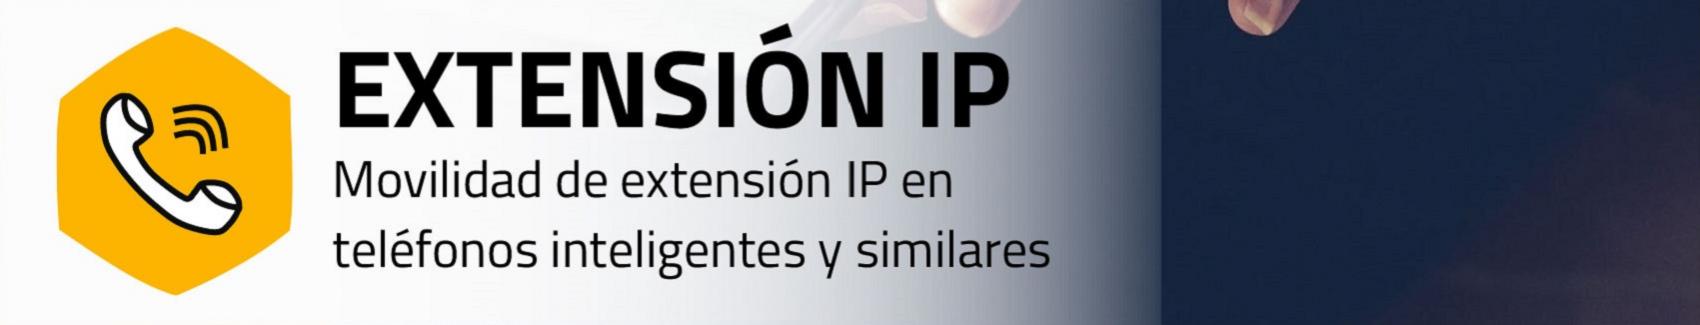 Imagen servicio Extensión IP